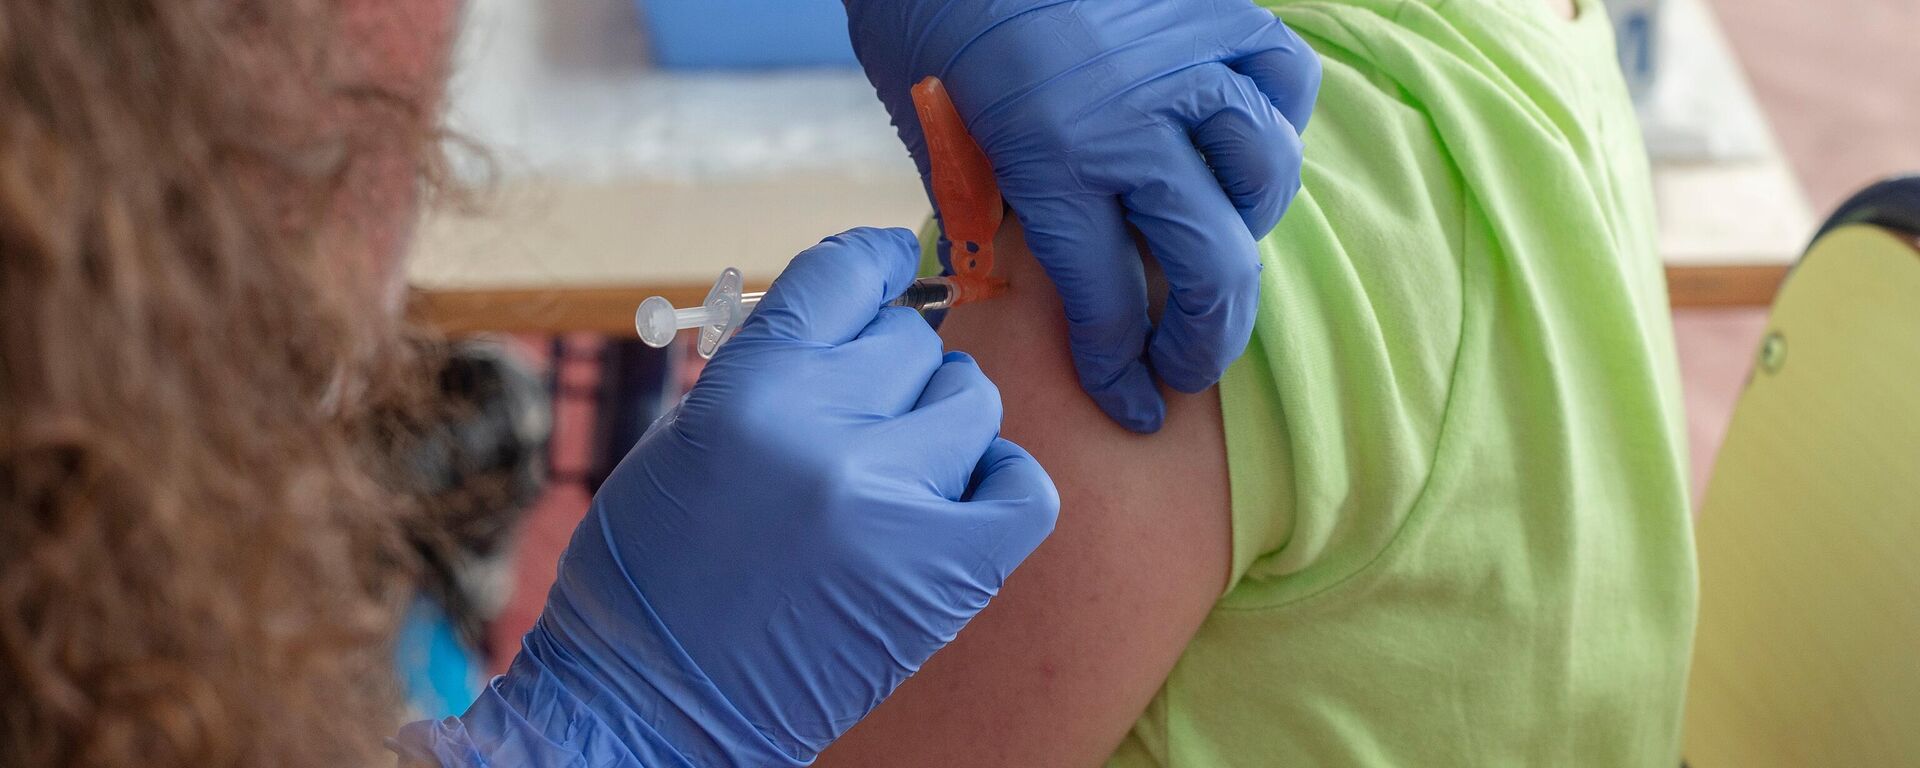 Un niño recibe la vacuna contra el Covid-19, en el CEIP Manel García Grau, a 13 de enero de 2022, - Sputnik Mundo, 1920, 28.01.2022